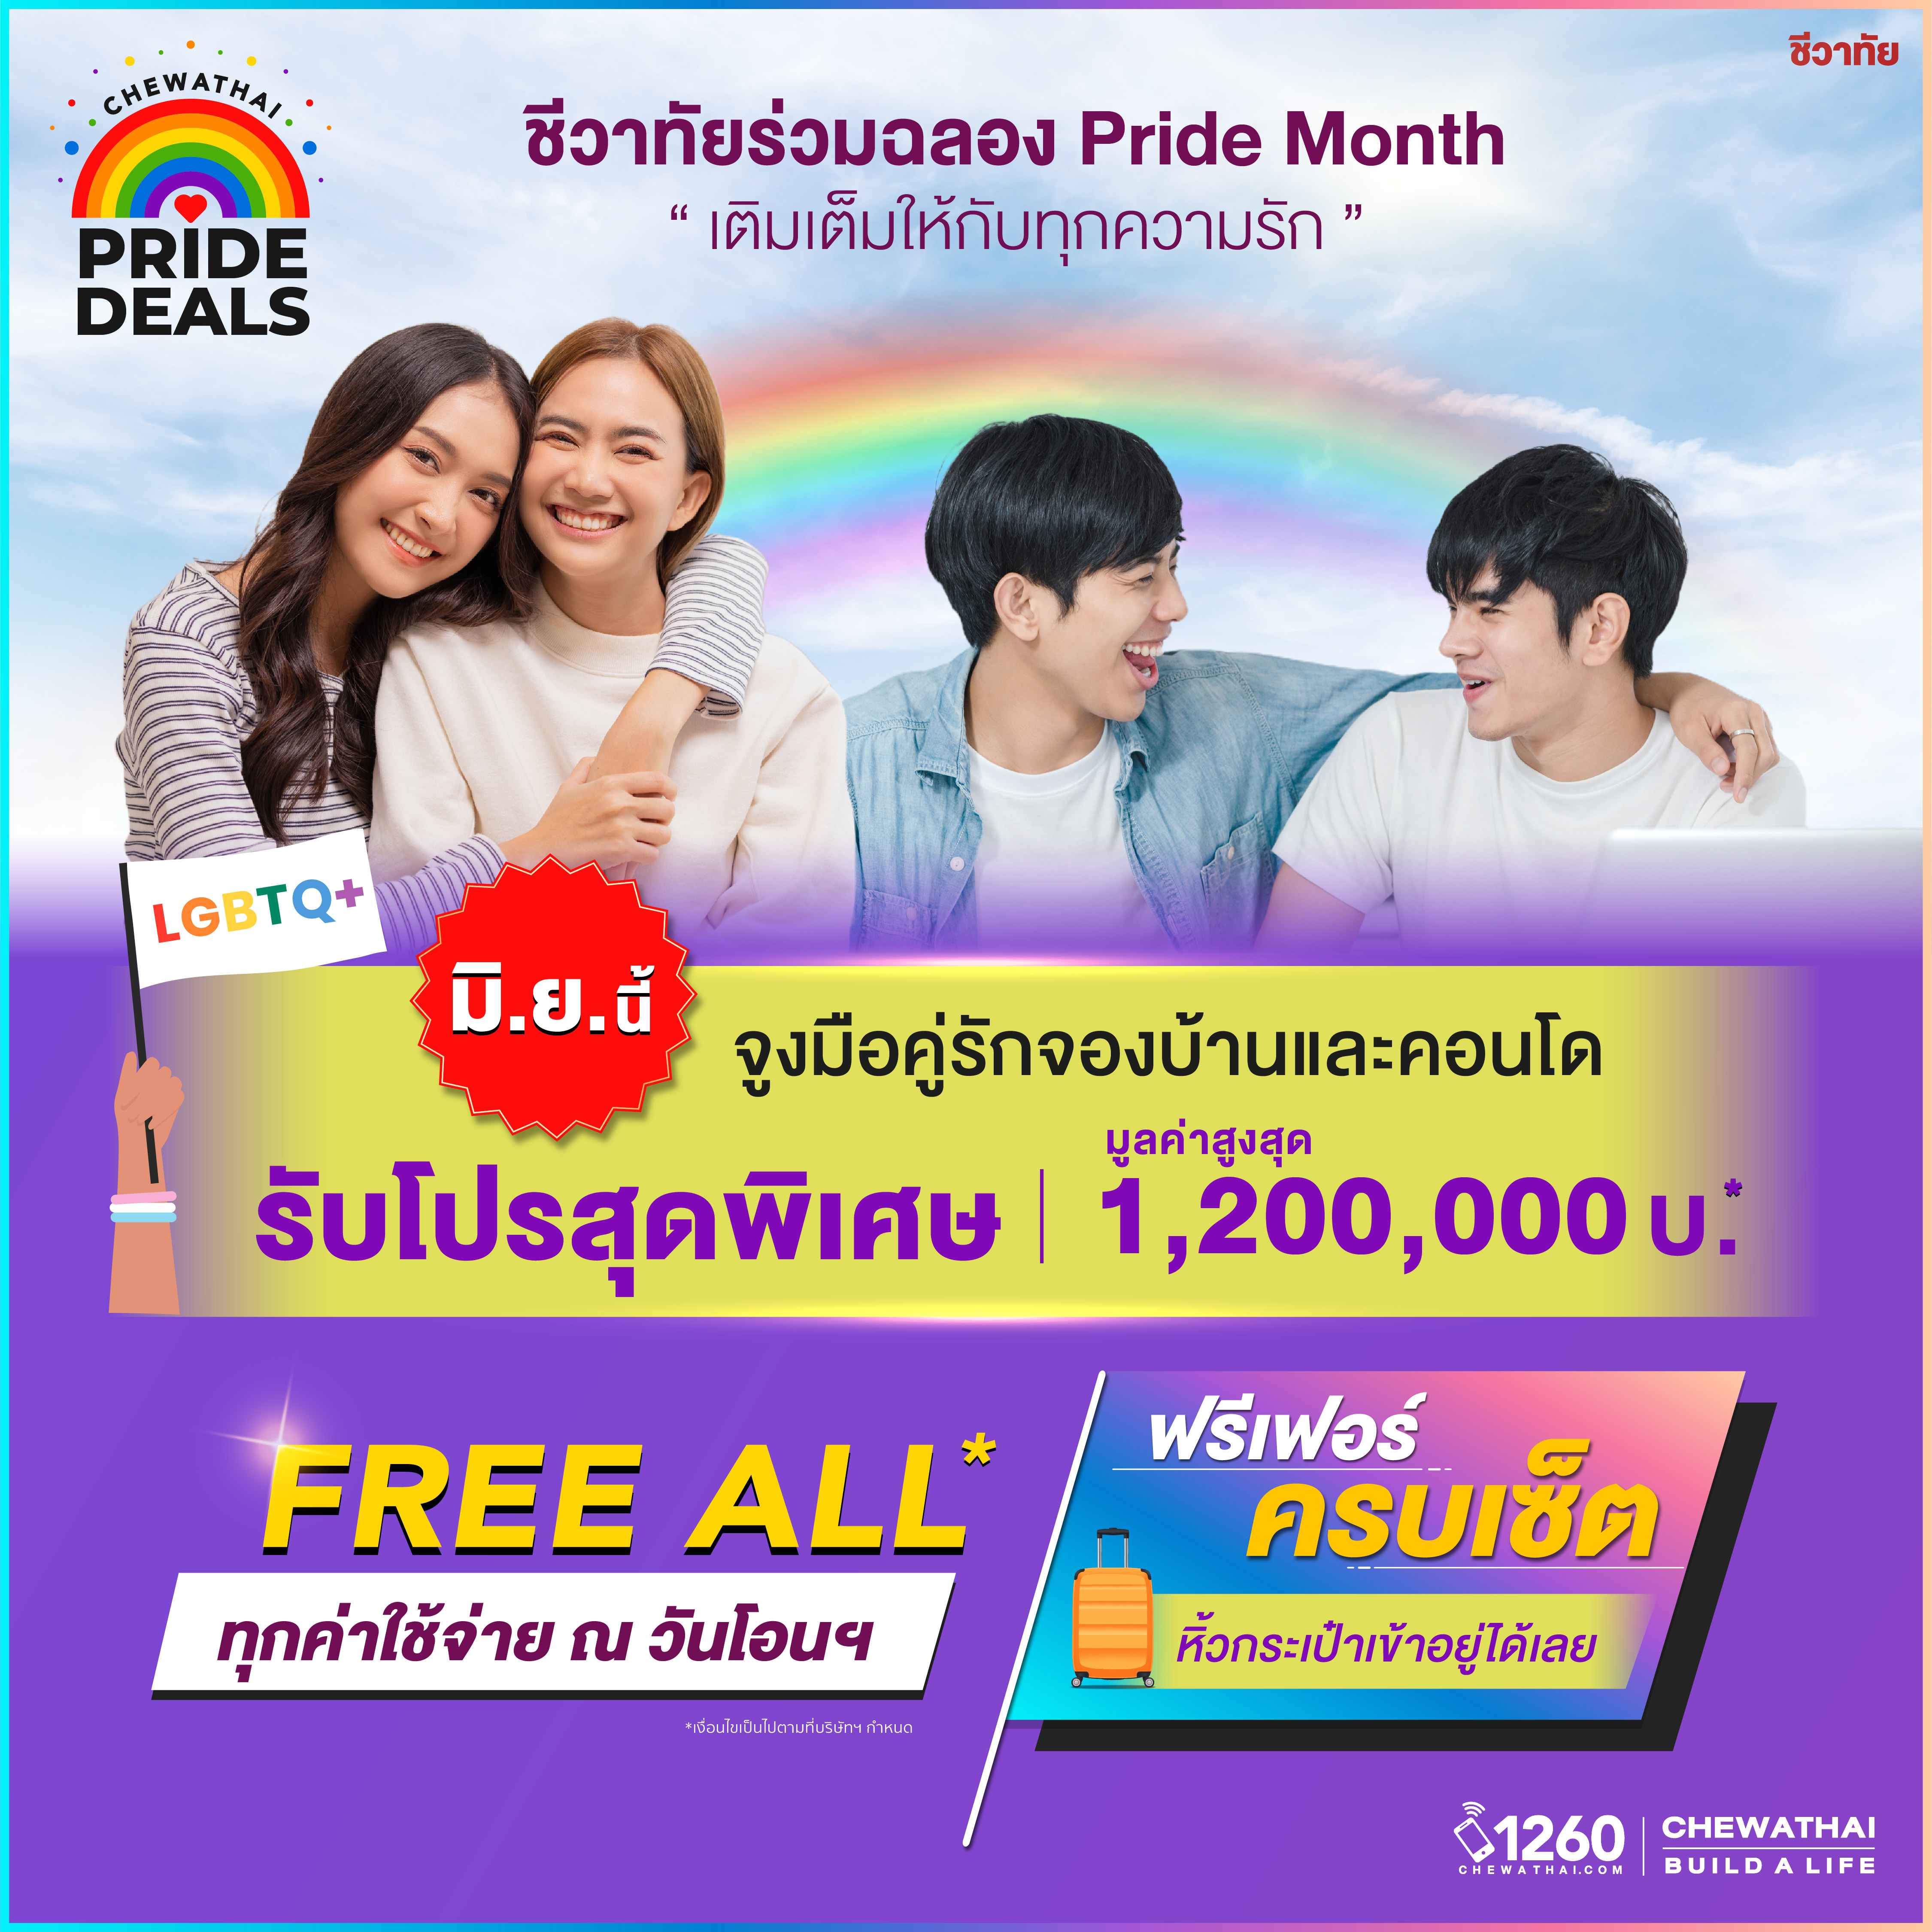 Chewathai Pride Deals มิ.ย.นี้ จูงมือคู่รักมาจองบ้านและคอนโดจากชีวาชัย รับโปรโมชั่นสูงสุด 1,200,000 บาท*